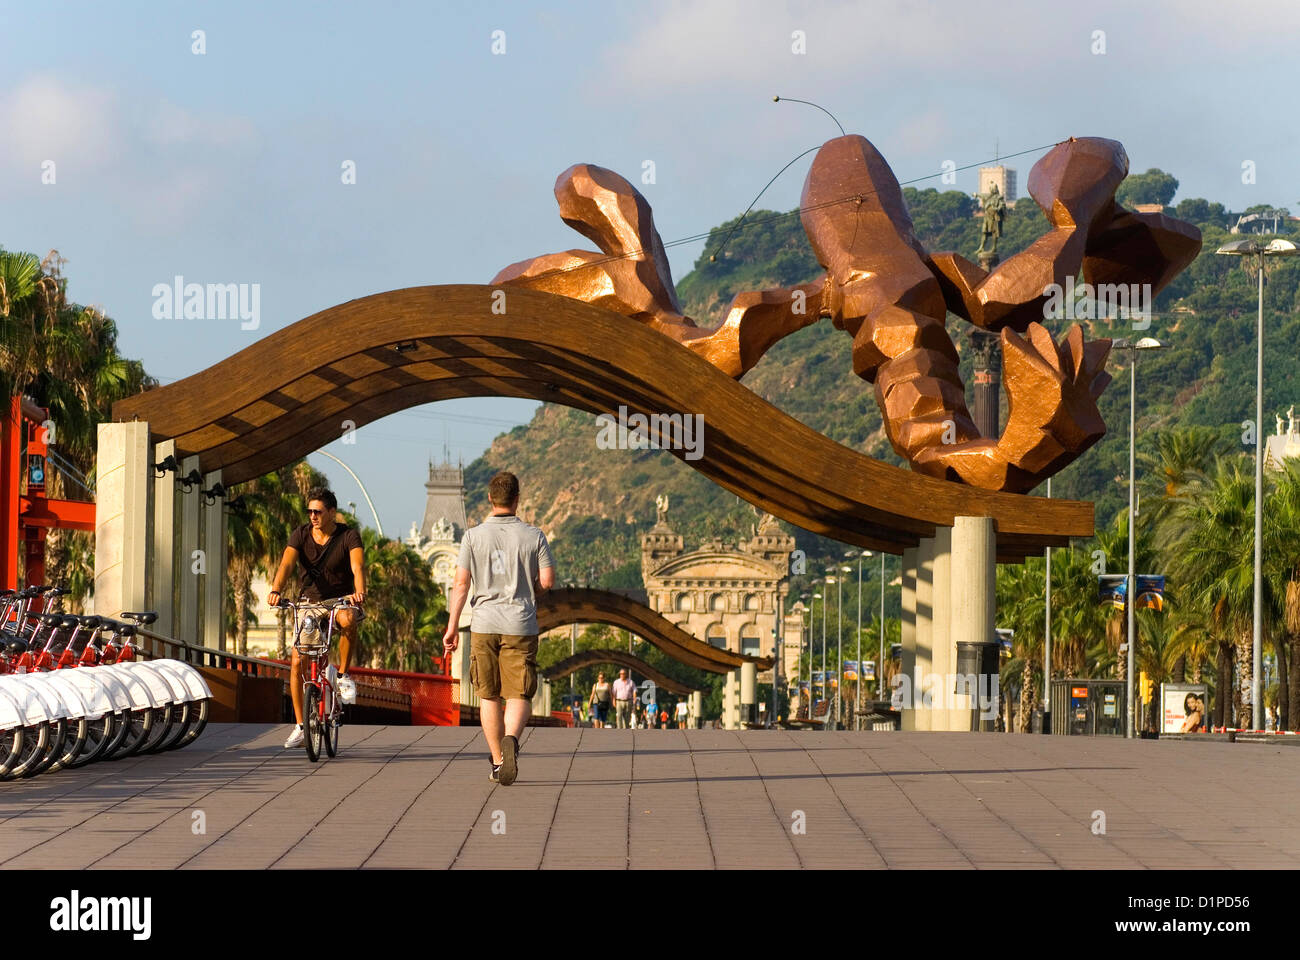 Le SHRIMP (crevette) ou Gambrinus grandes dimensions sculpture conçue par l'espagnol Javier Mariscal, situé sur le Paseo Colon, Barcelone Banque D'Images